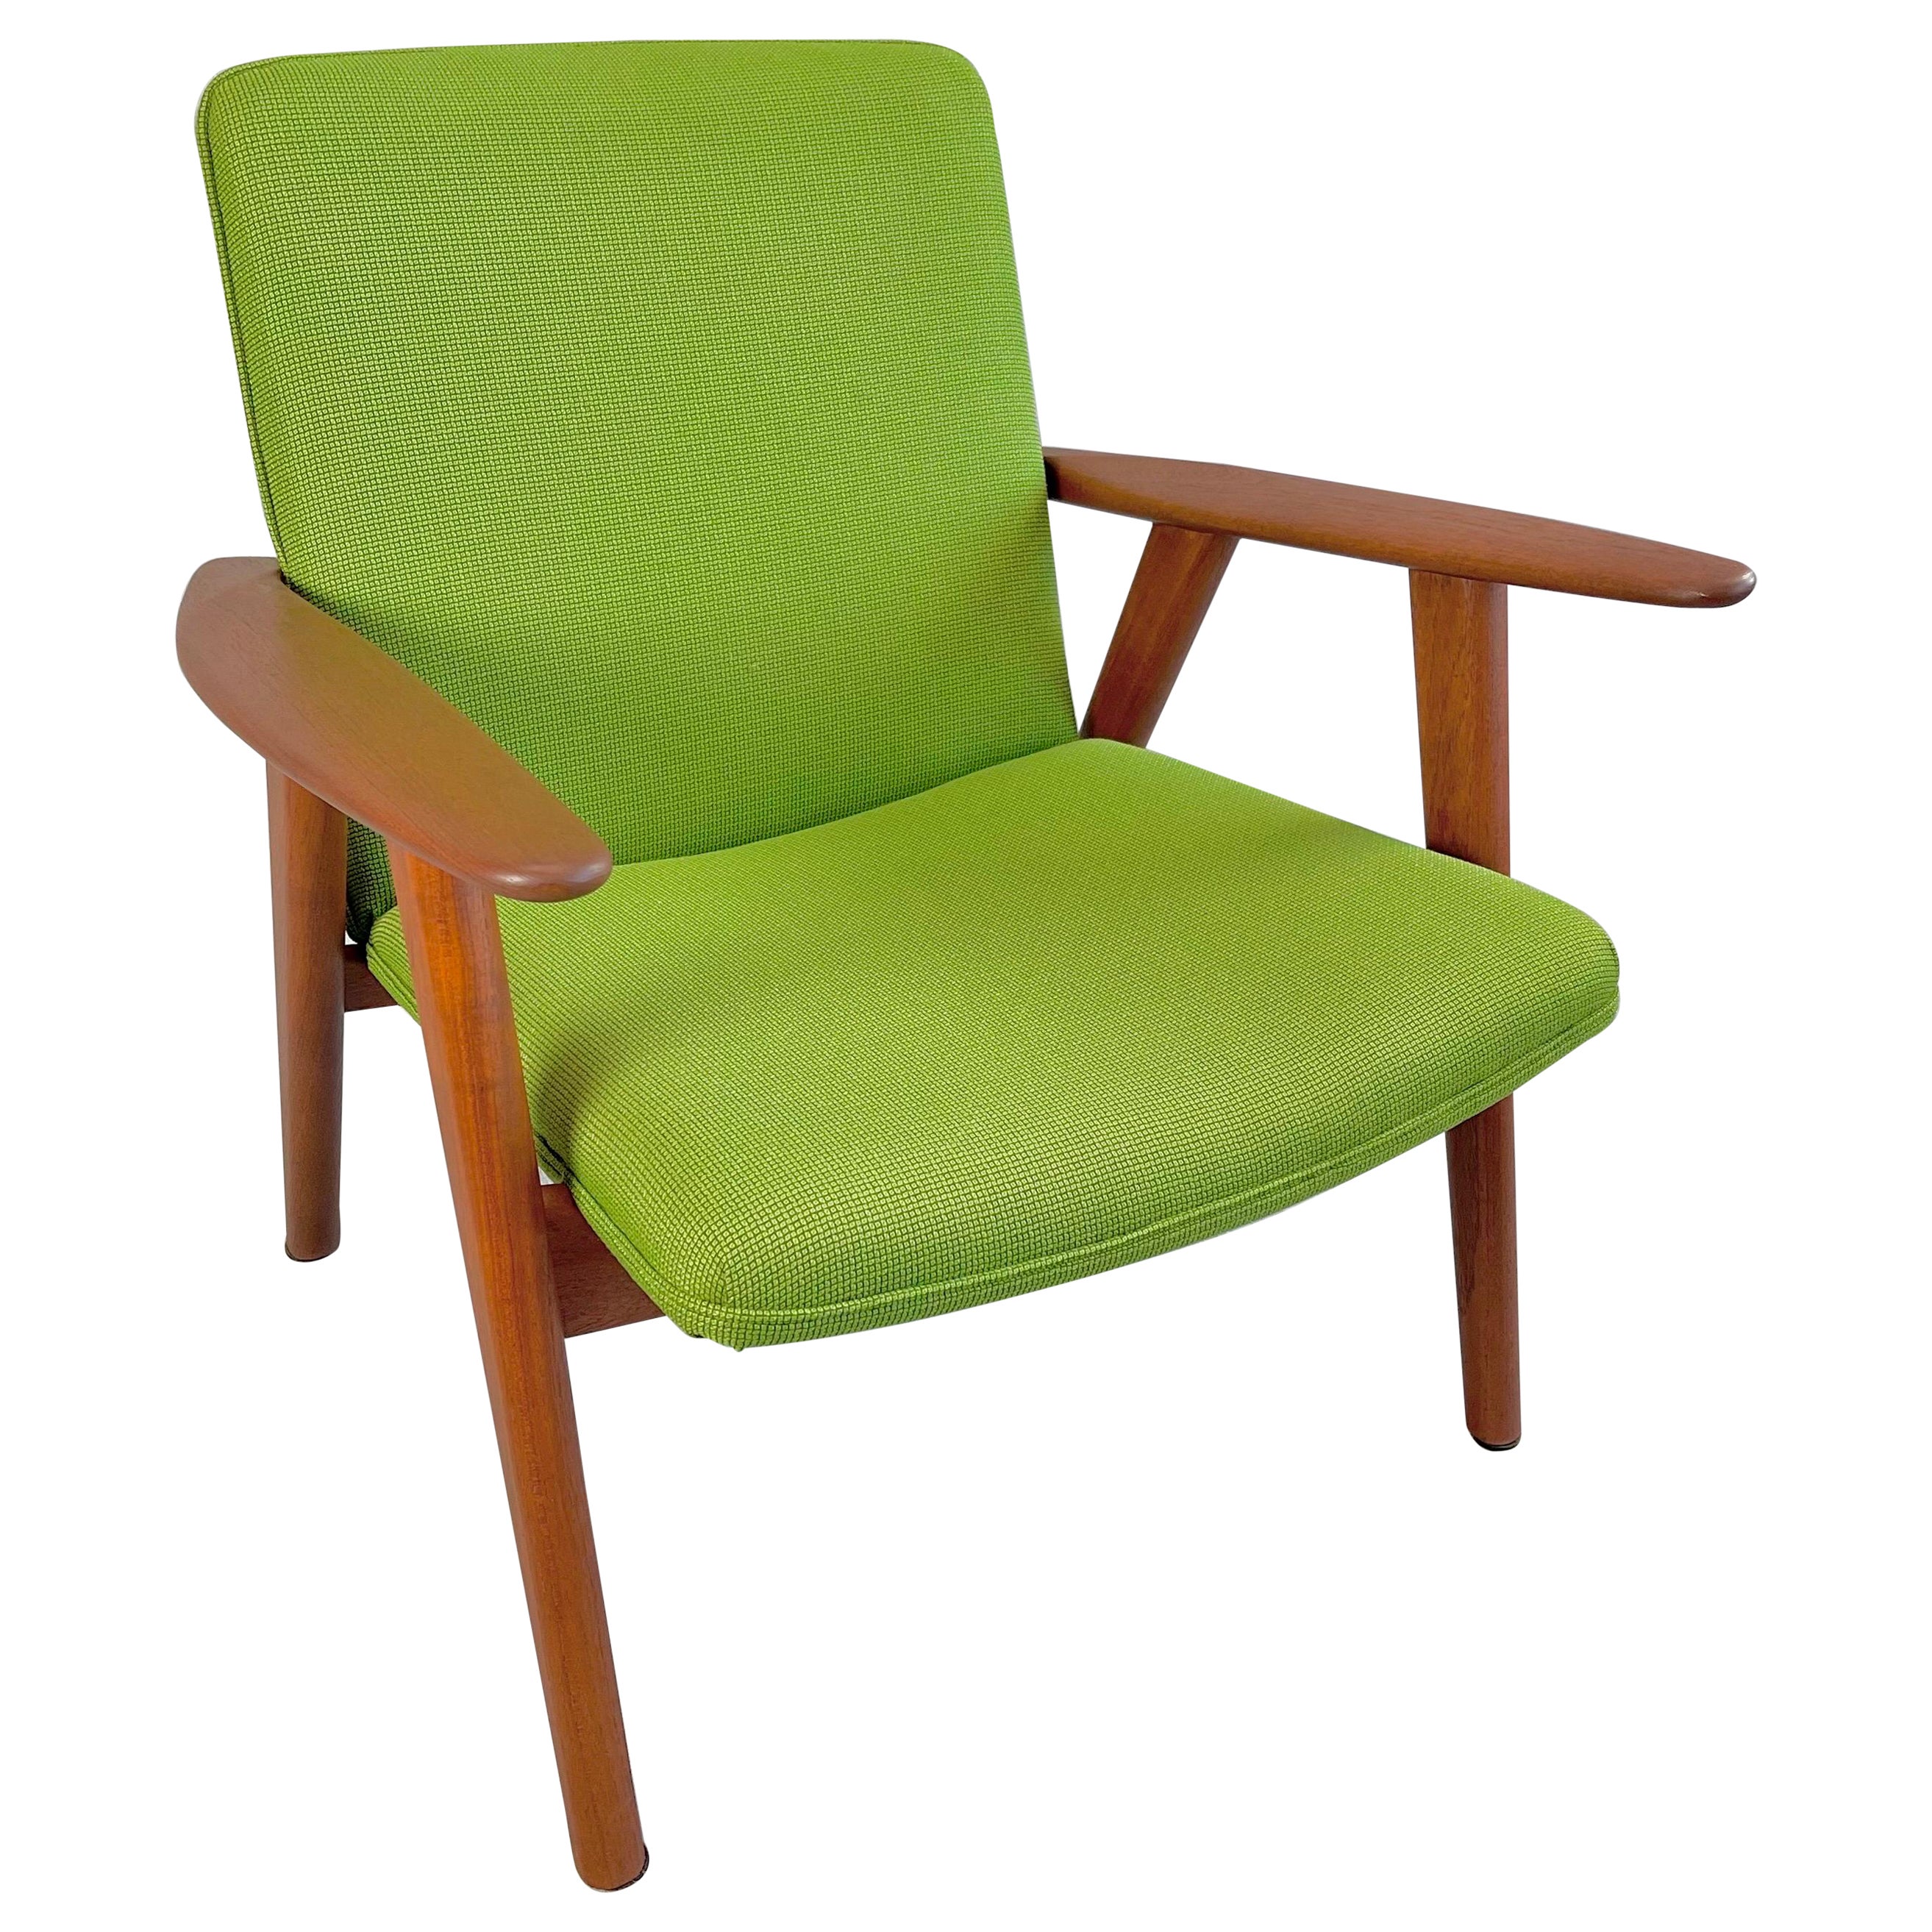 1950’s Hans J. Wegner designed JH517 Lounge Chair for Johannes Hansen Mobler